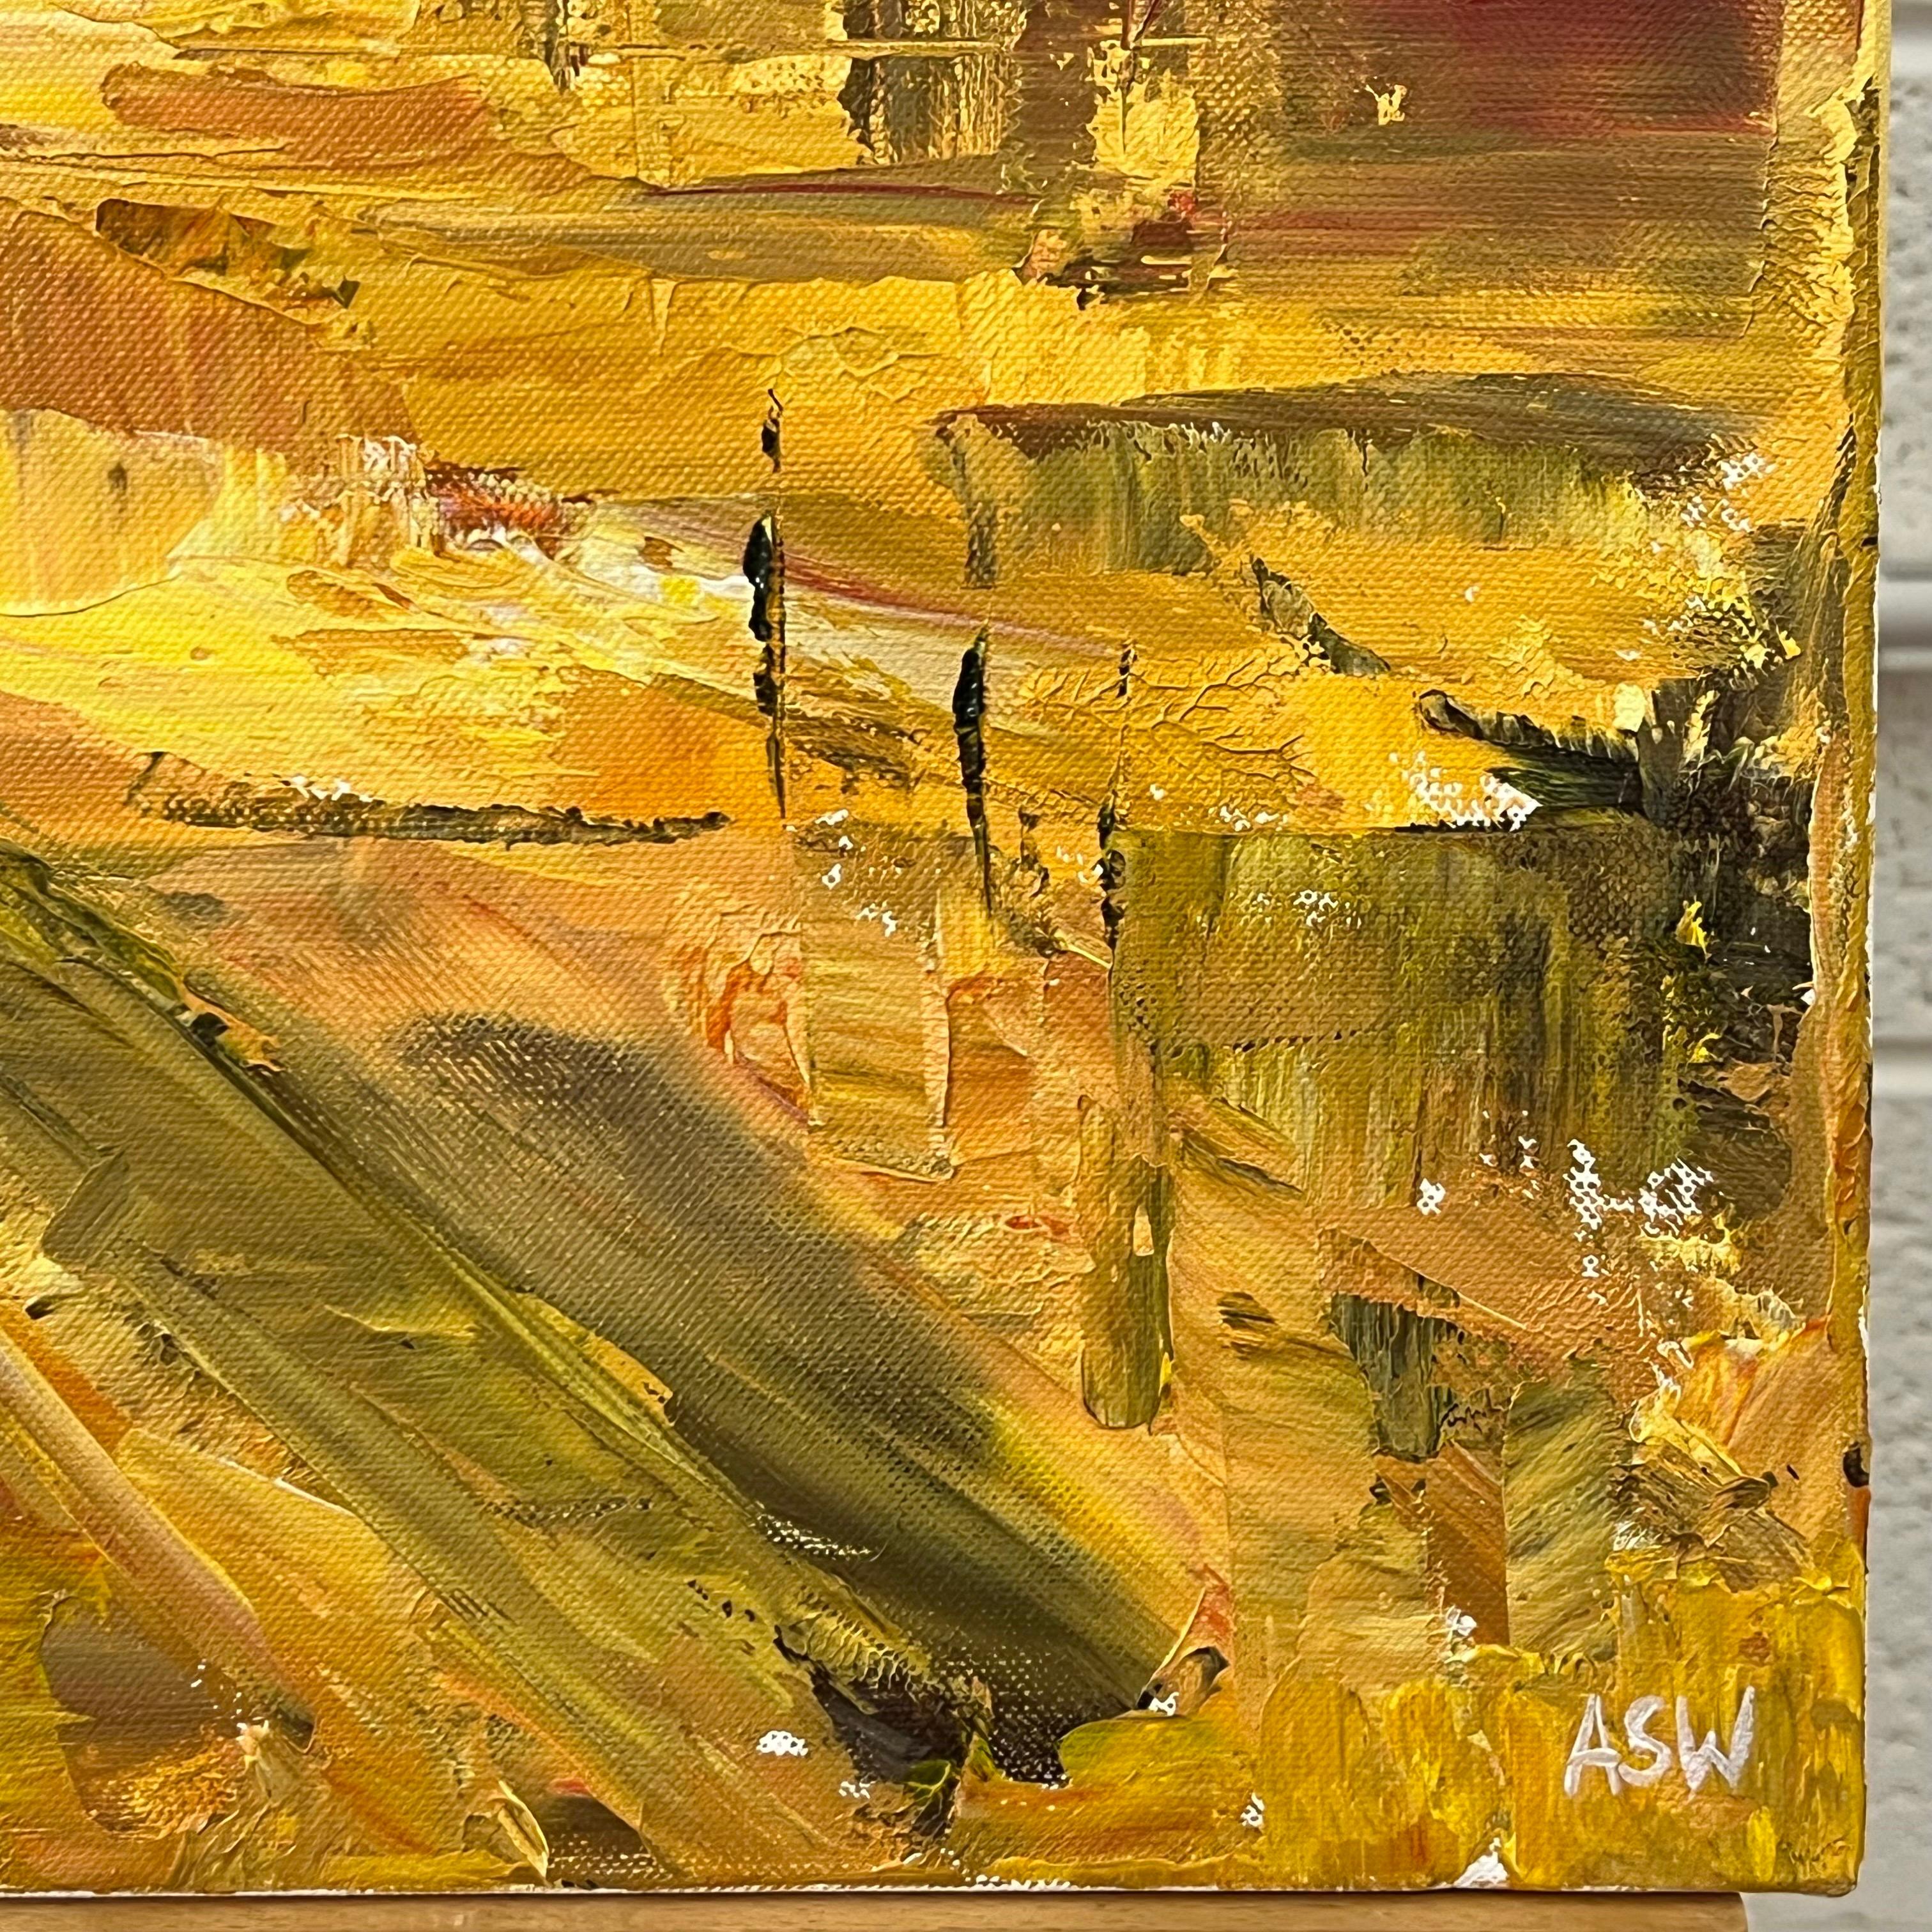 Peinture de paysage abstrait jaune doré de Los Angeles par l'artiste britannique contemporaine Angela Wakefield. Cet original unique est une interprétation expressive très texturée de la Cité des Anges à l'aide d'un couteau à palette, qui rappelle